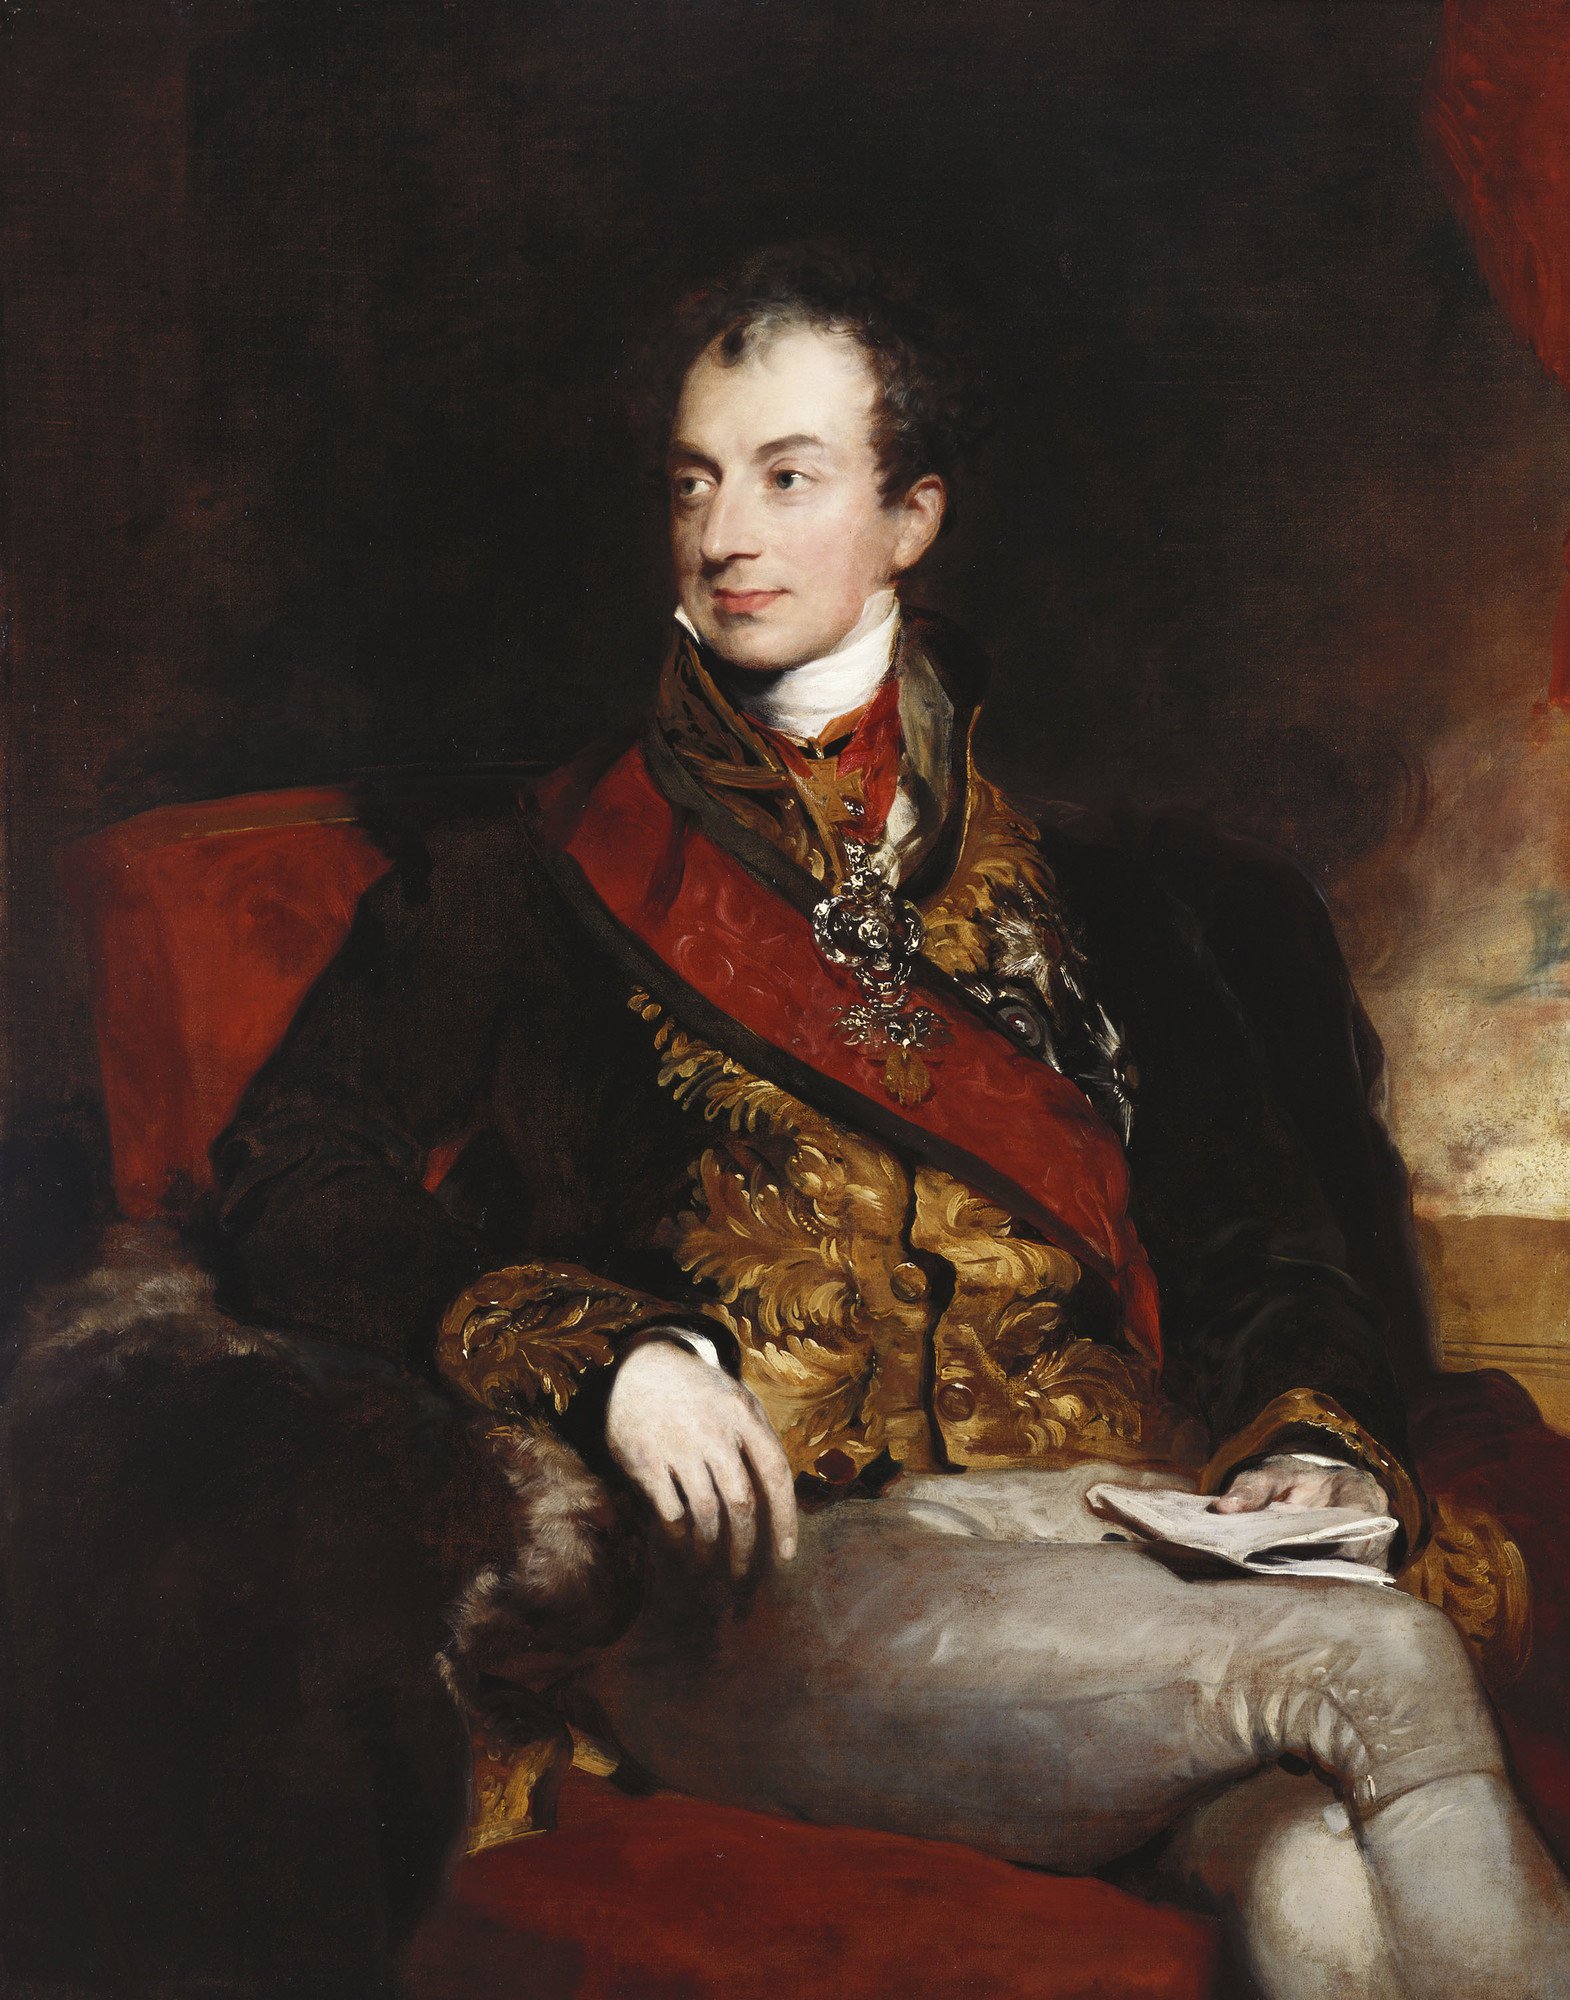 Un altro ritratto celebre del Principe Von Metternich